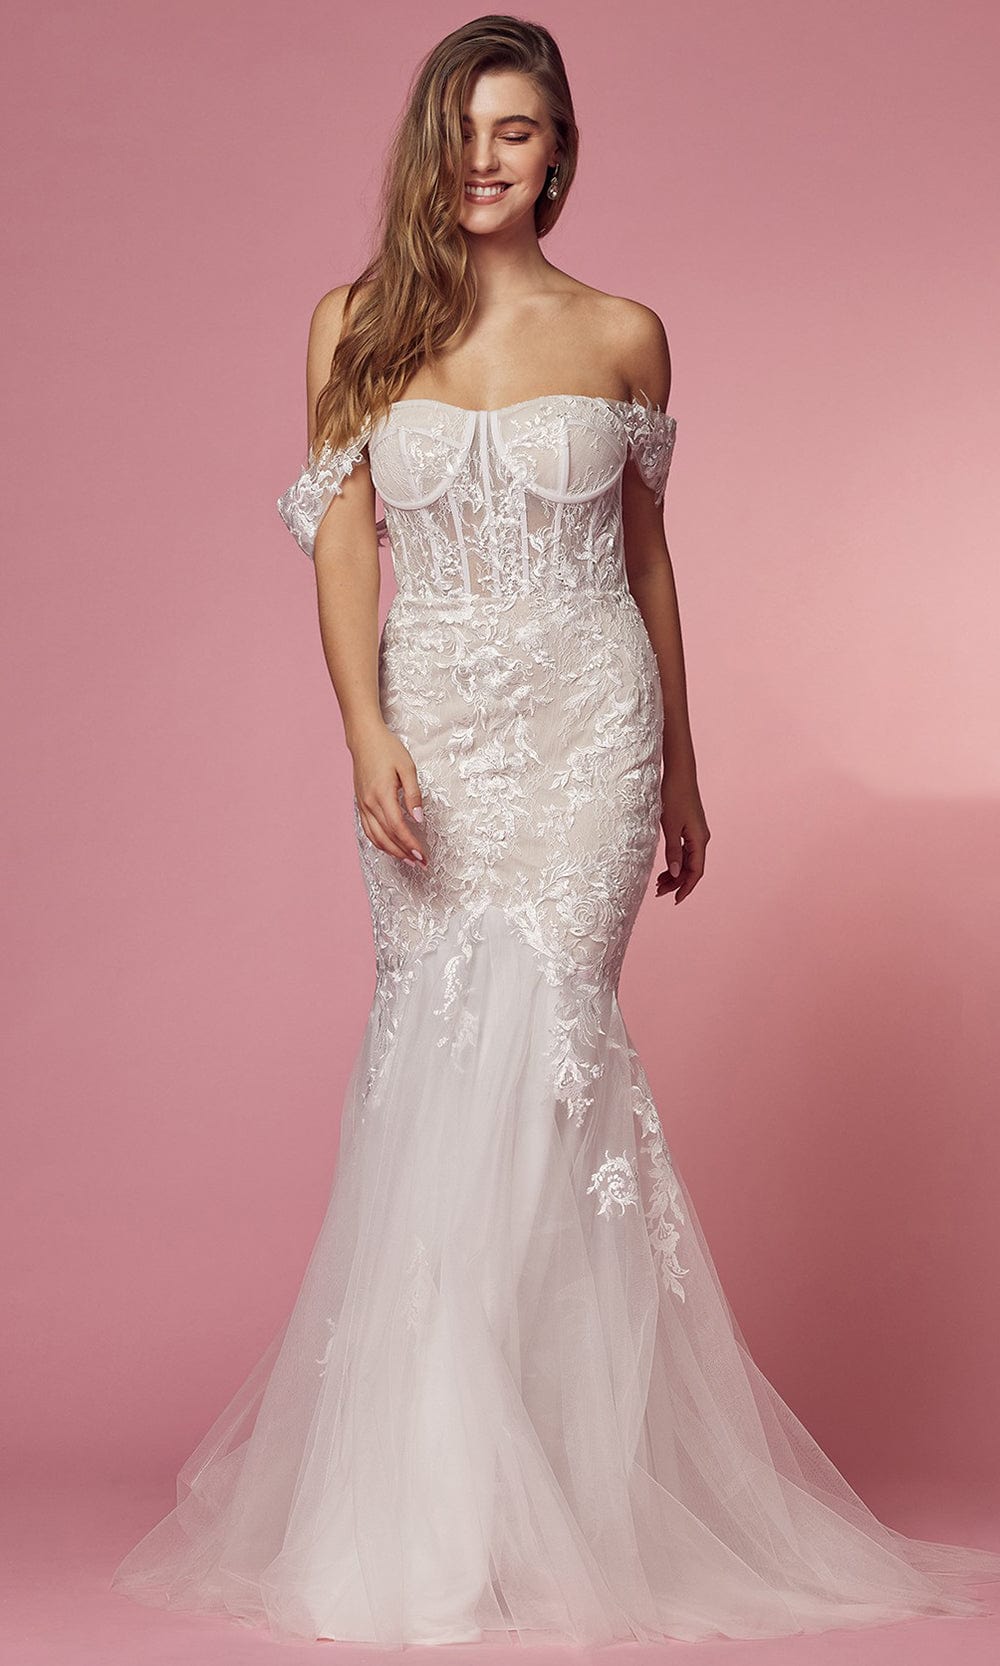 Nox Anabel Bridal JS924 - Corset Lace Bridal Gown
